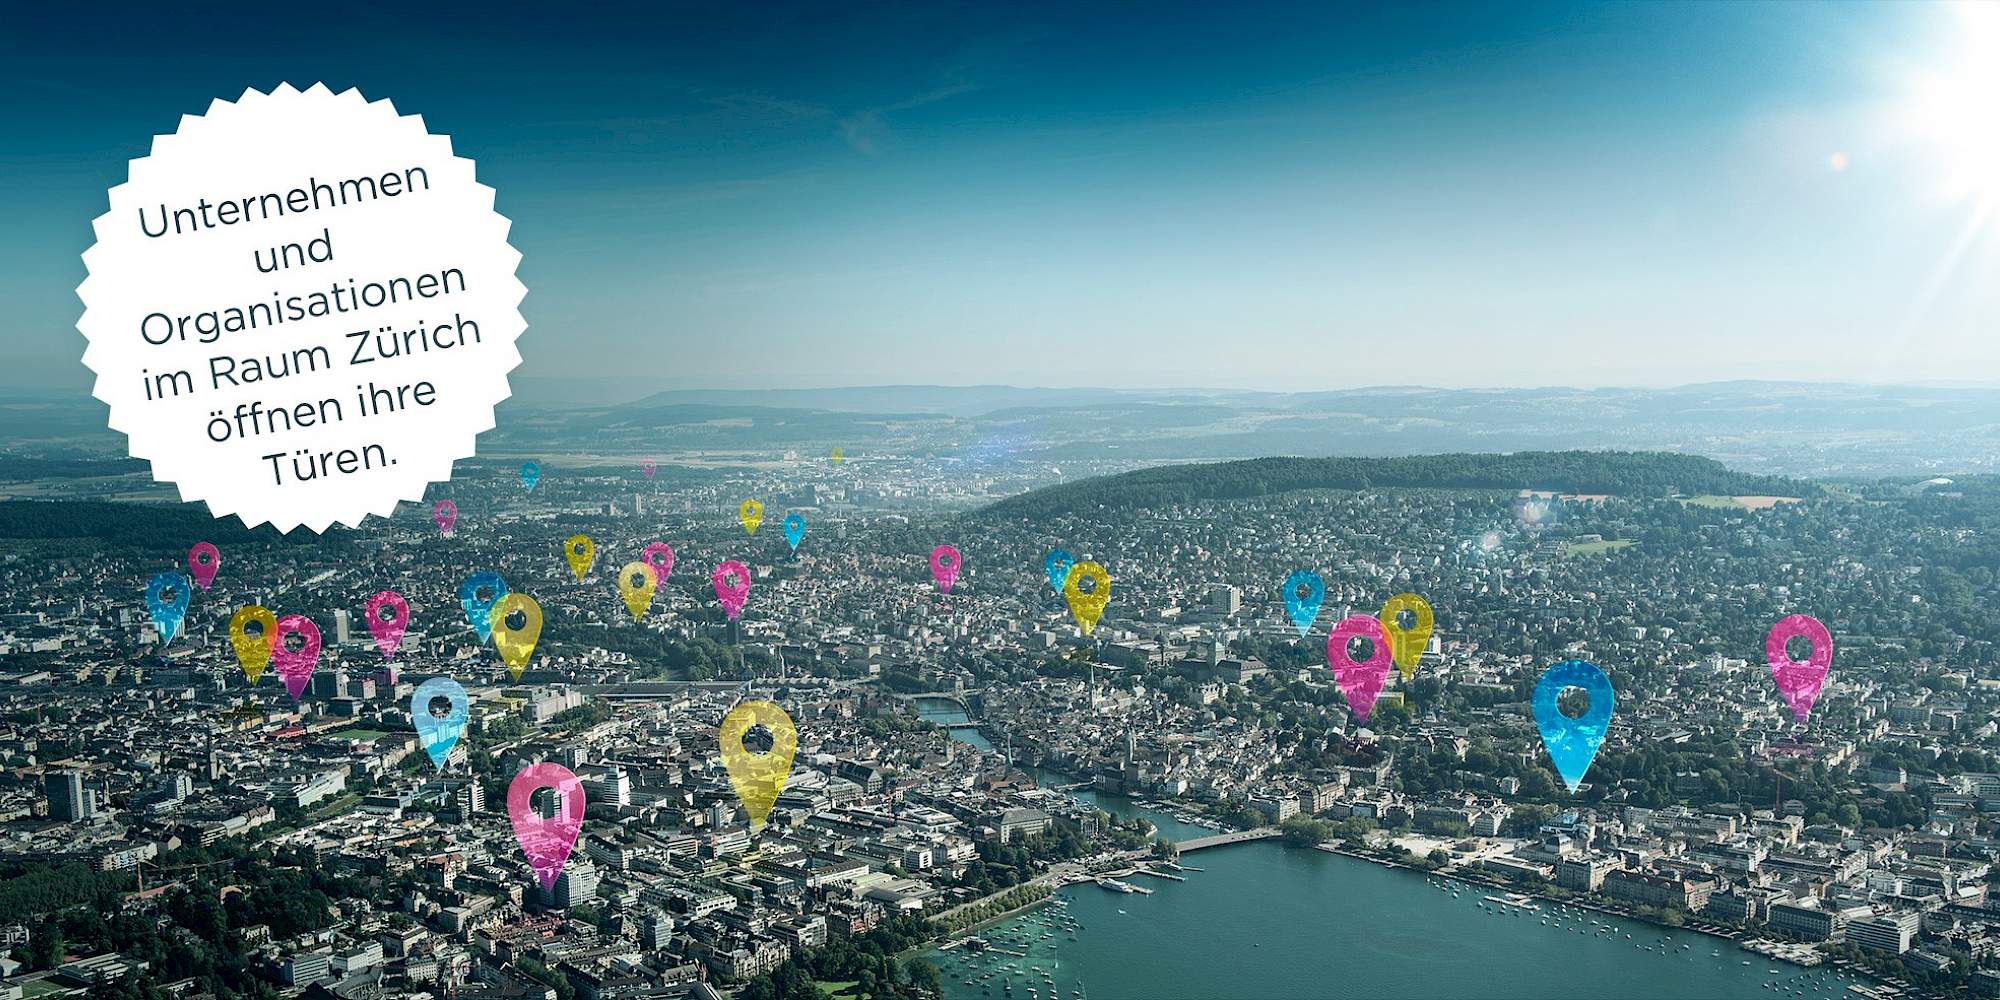 Informatiktage 2017 Super Titelbild einer Digitalen Stadt Zürich